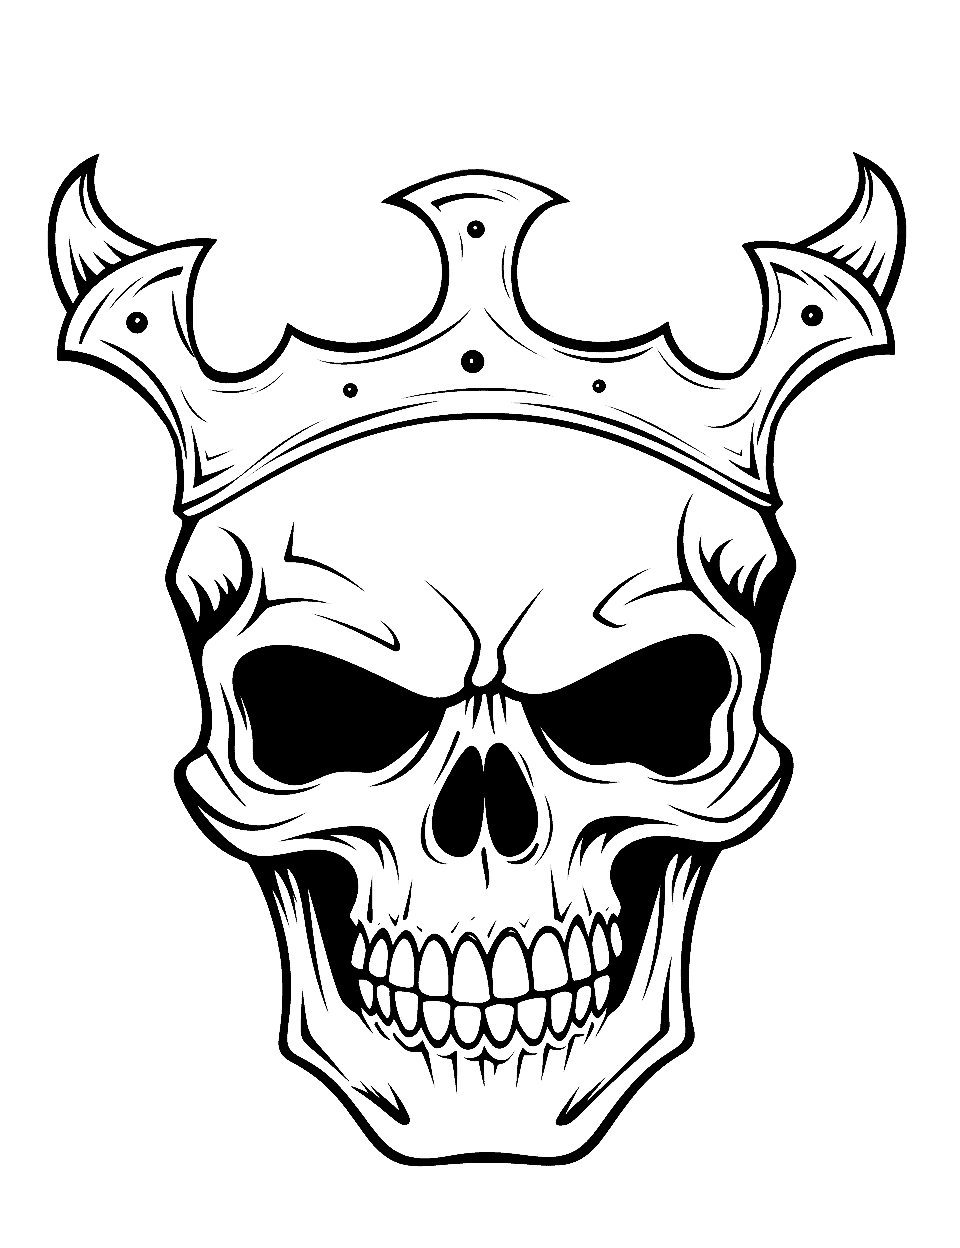 Devils Crown Coloring Page - A skull wearing a unique devil crown.